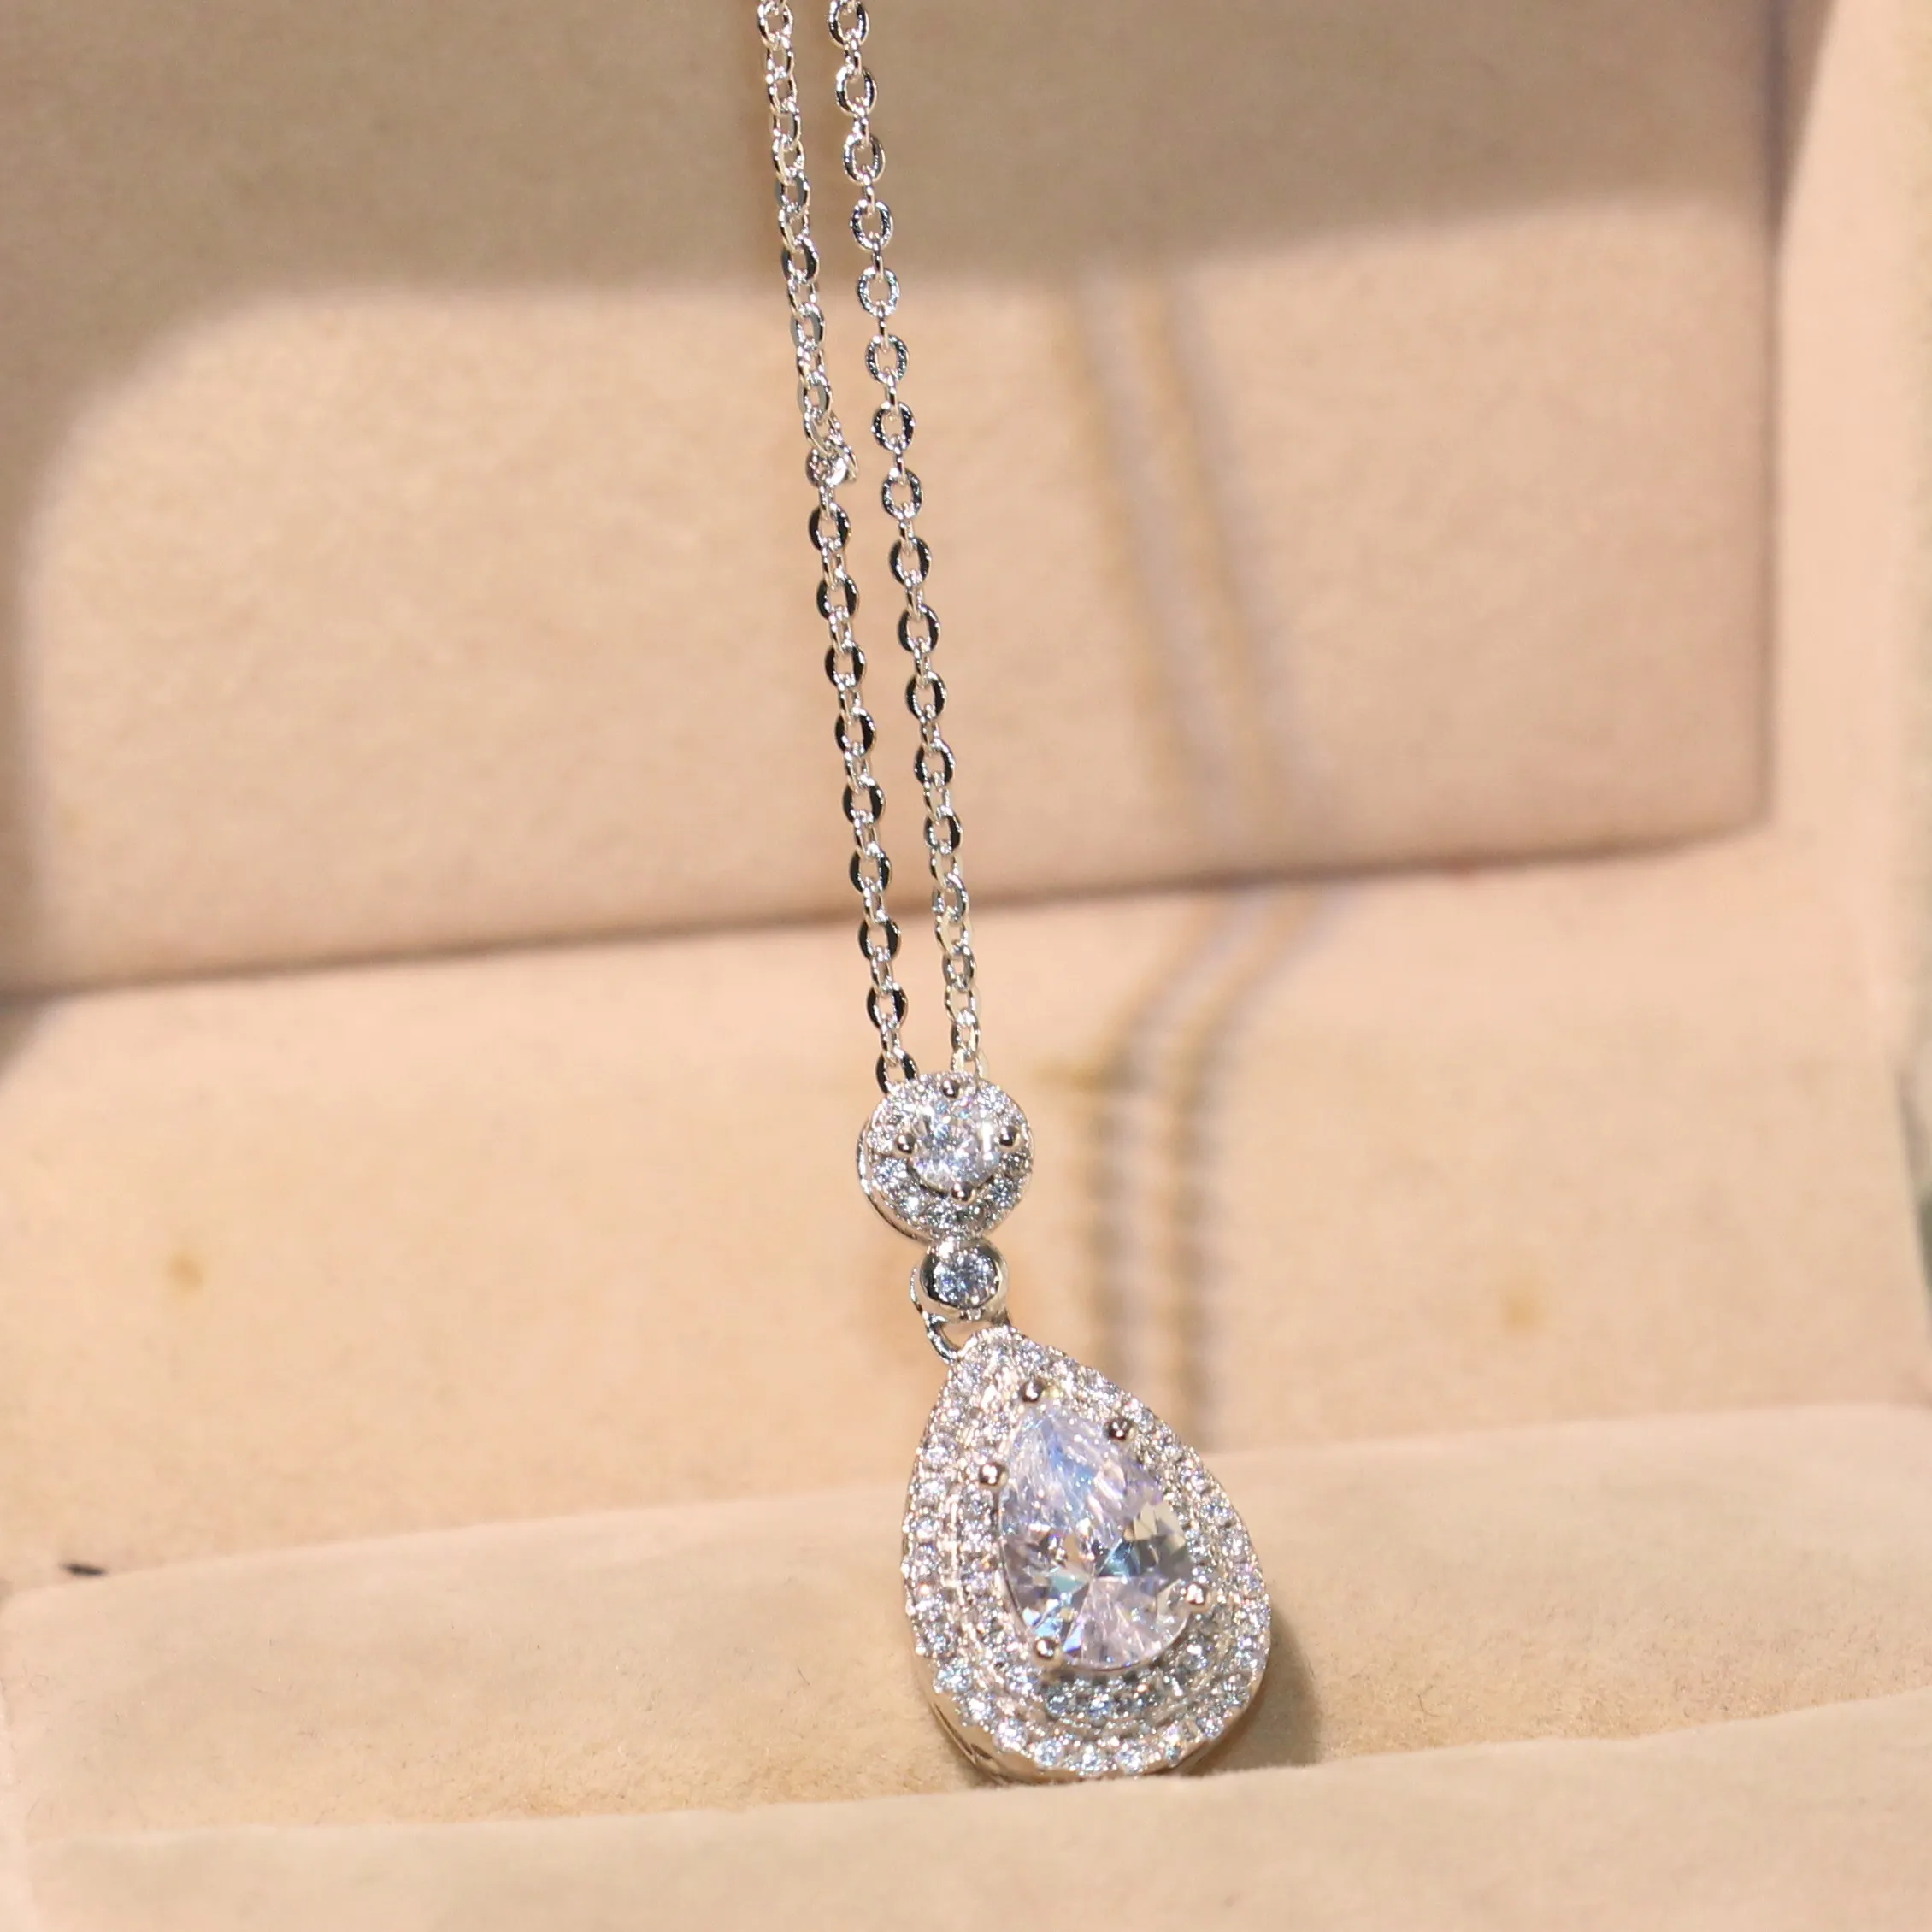 Toppsäljande hela professionella lyxiga smycken vatten dropphalsband 925 Sterling Silver Pear Shape Topaz Cz Diamond Pendant för 166p